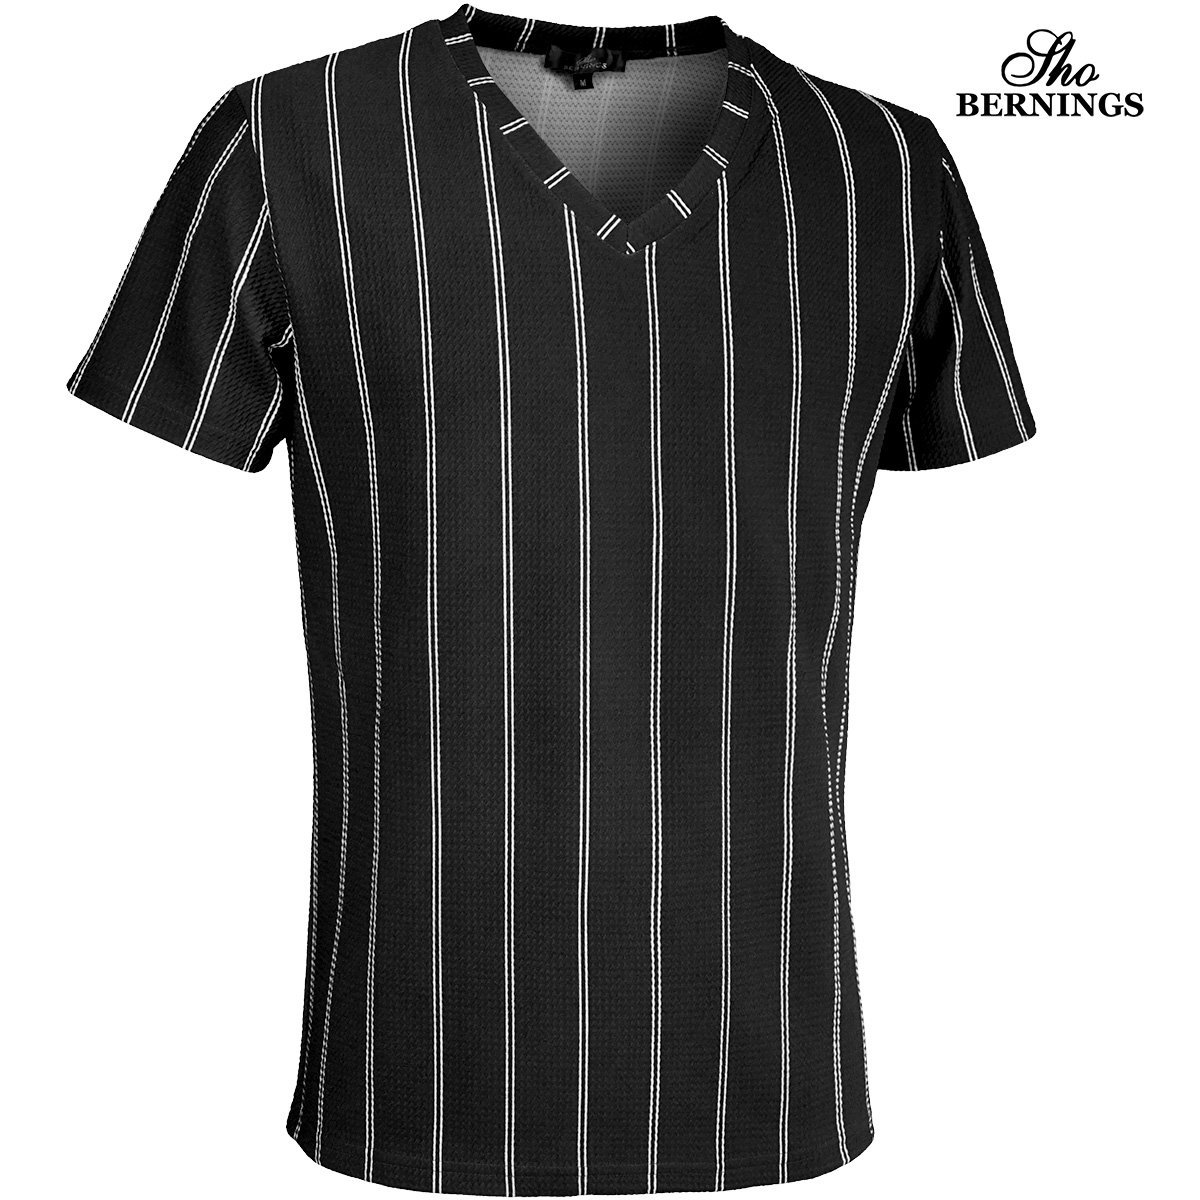 319032-90 Bernings sho Tシャツ Vネック ダブルストライプ シンプル 半袖 mens メンズ(ブラック黒) きれいめ カジュアル XL_画像1